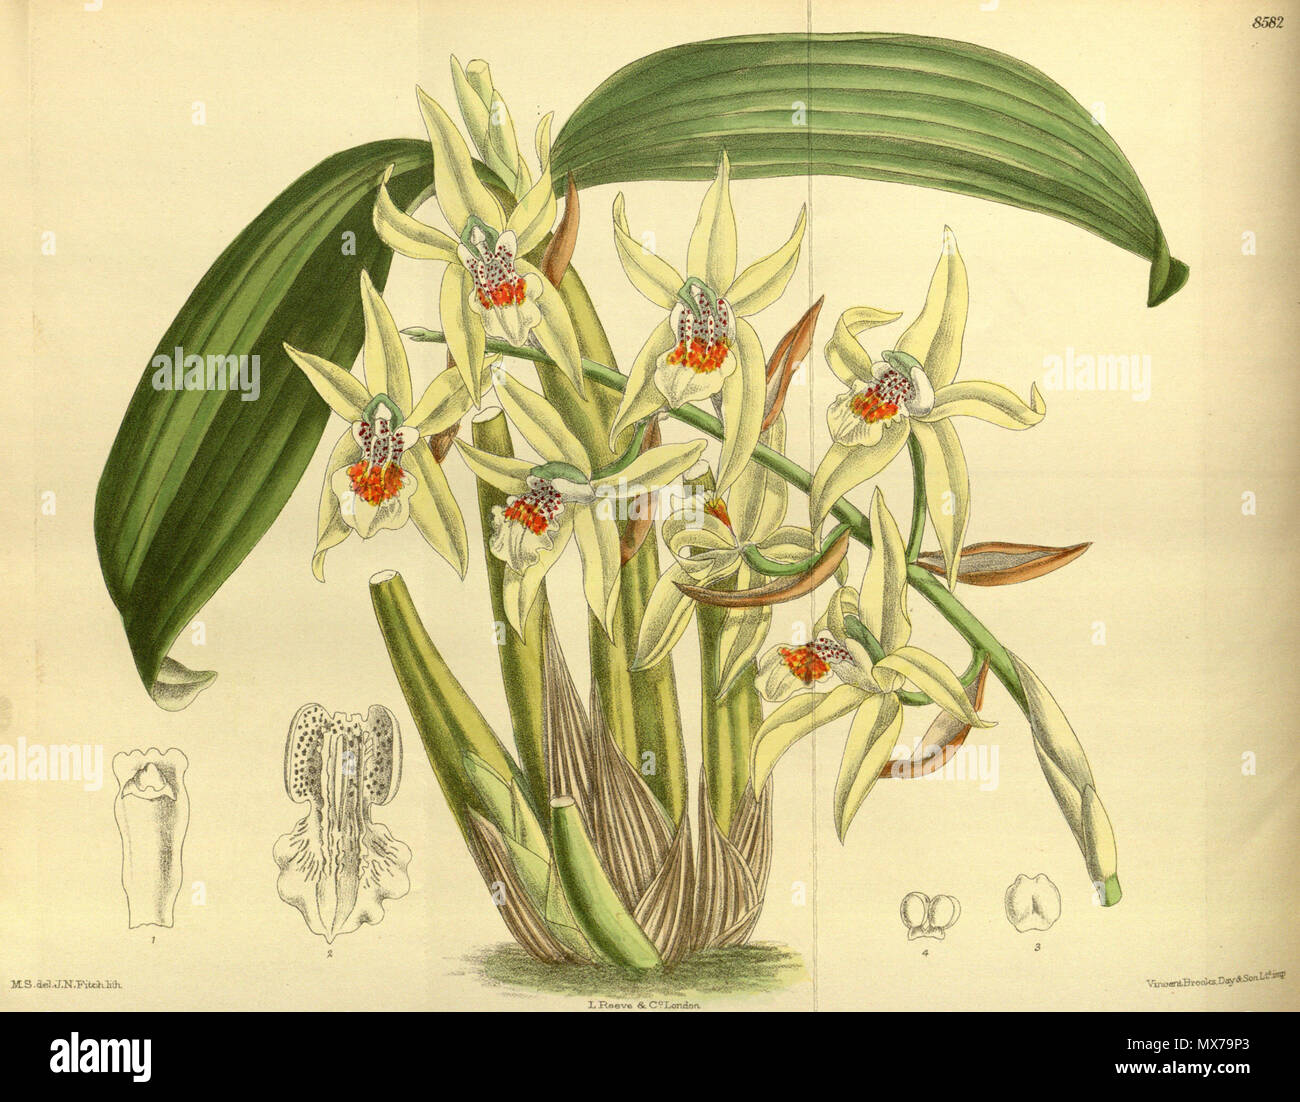 . Coelogyne brachyptera, Orchidaceae . 1914. M.S. del., J.N.Fitch lith. 138 Coelogyne brachyptera 140-8582 Stock Photo